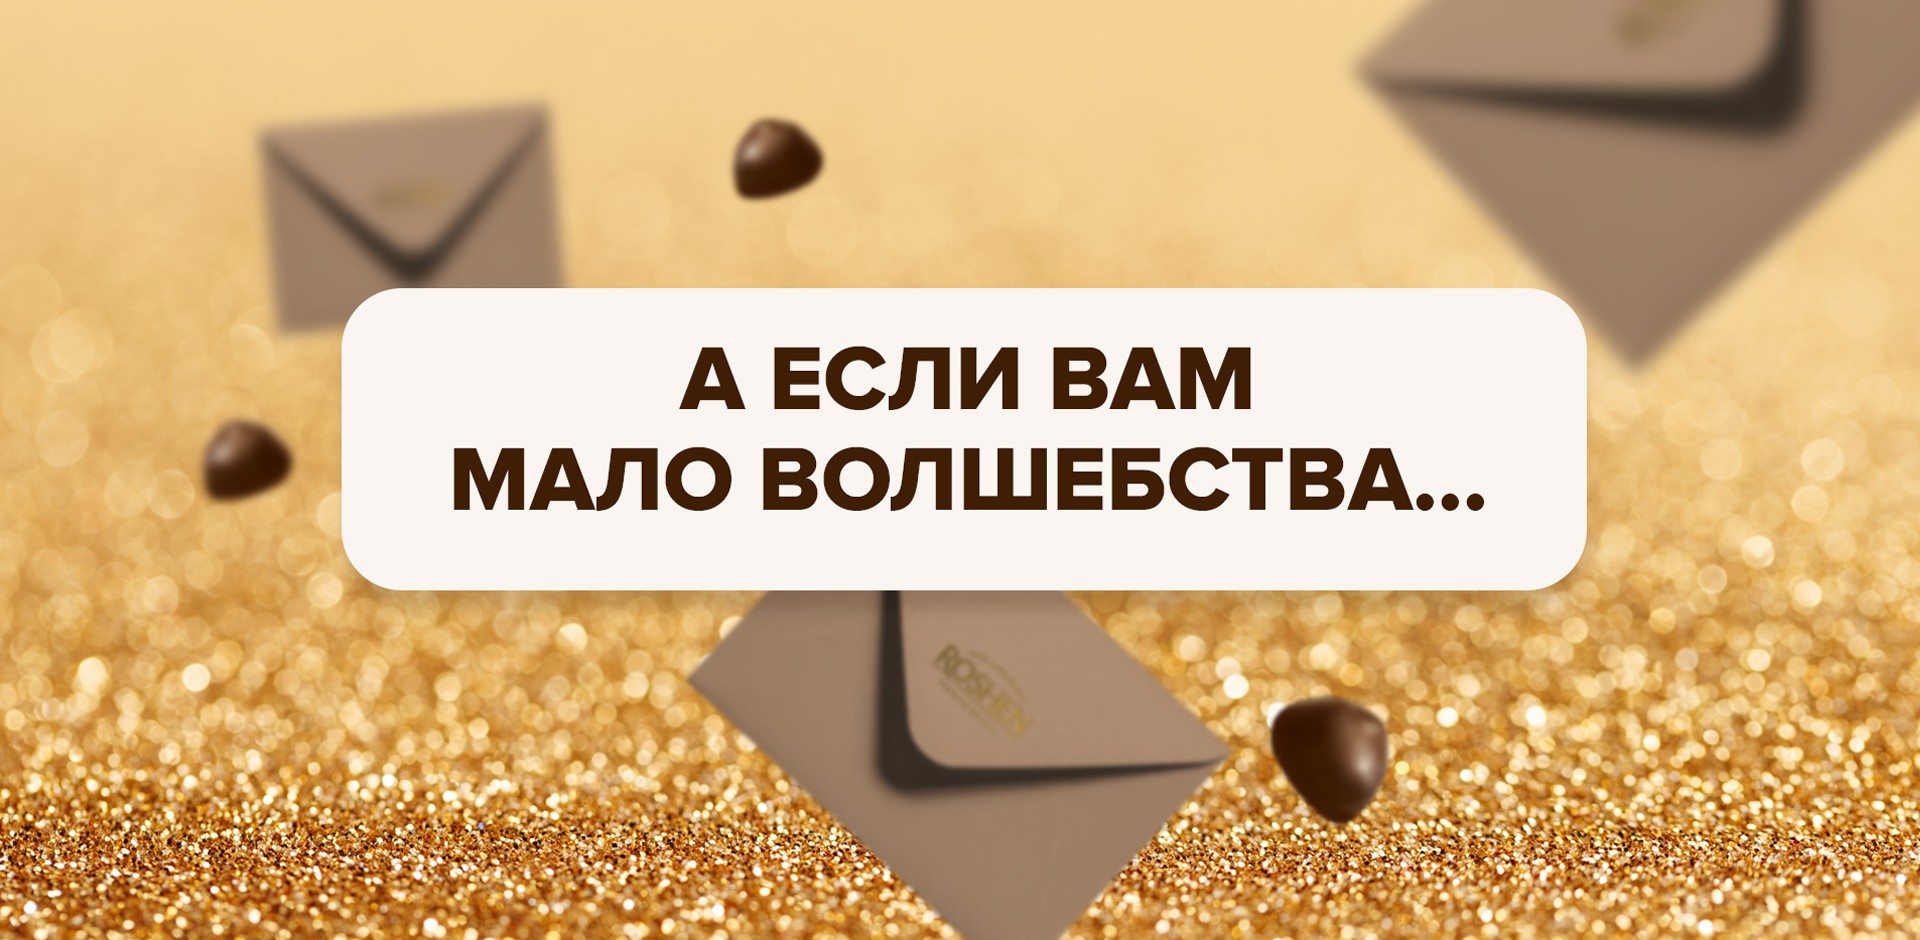 Фото №14: Редизайн для конфет «Киев вечерний» - Разработка логотипа и создание бренда в студии брендинга Rocketmen Agency